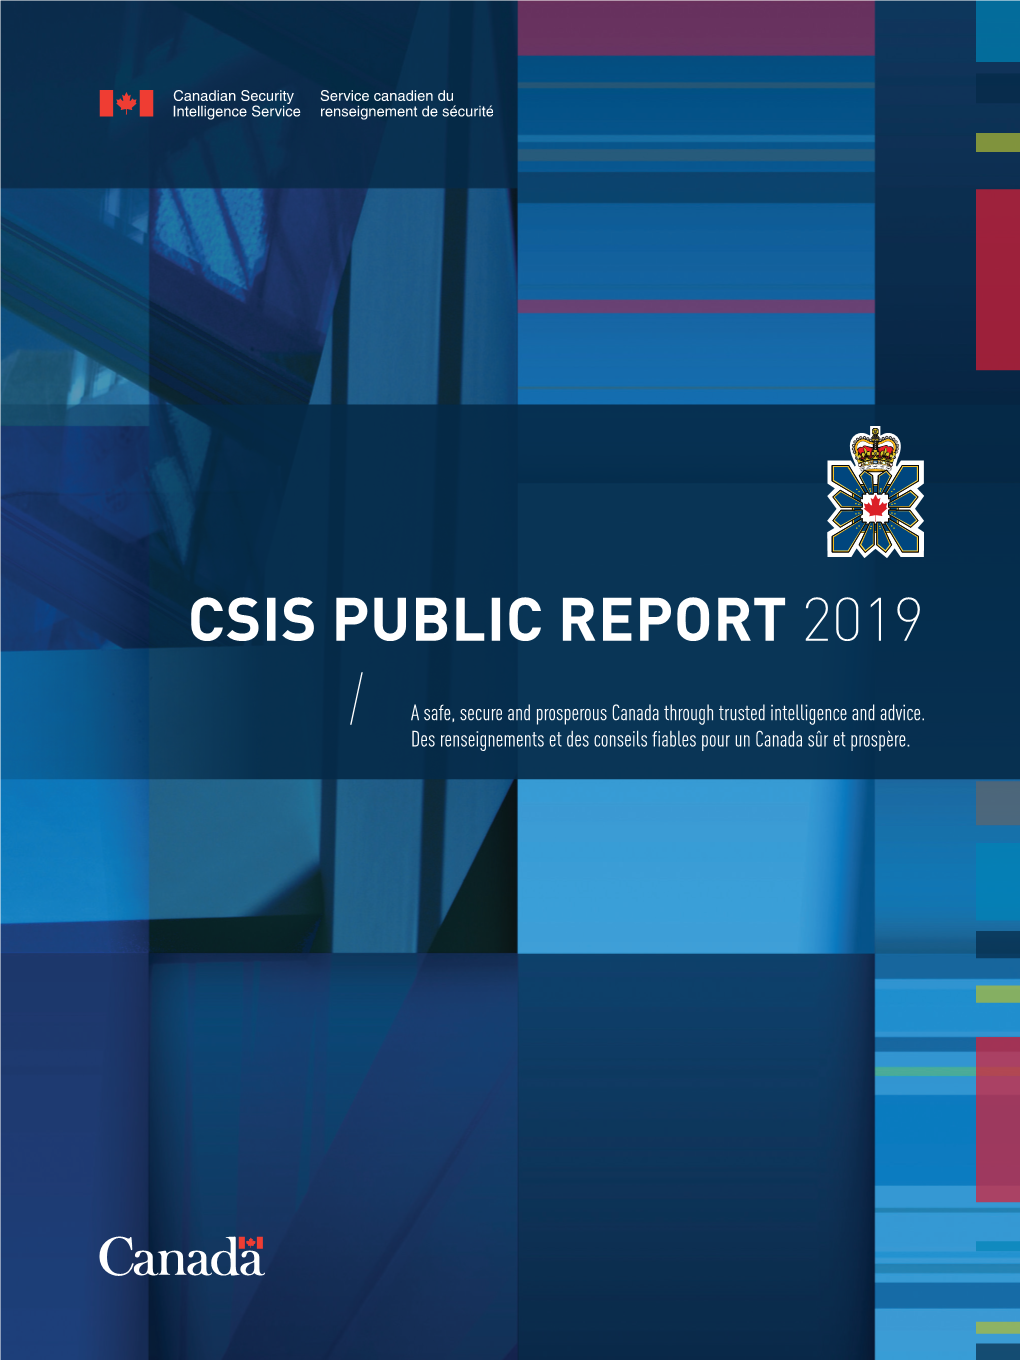 CSIS PUBLIC REPORT 2019 Aussi Disponible En Français Sous Le Titre : Rapport Public Du SCRS 2019